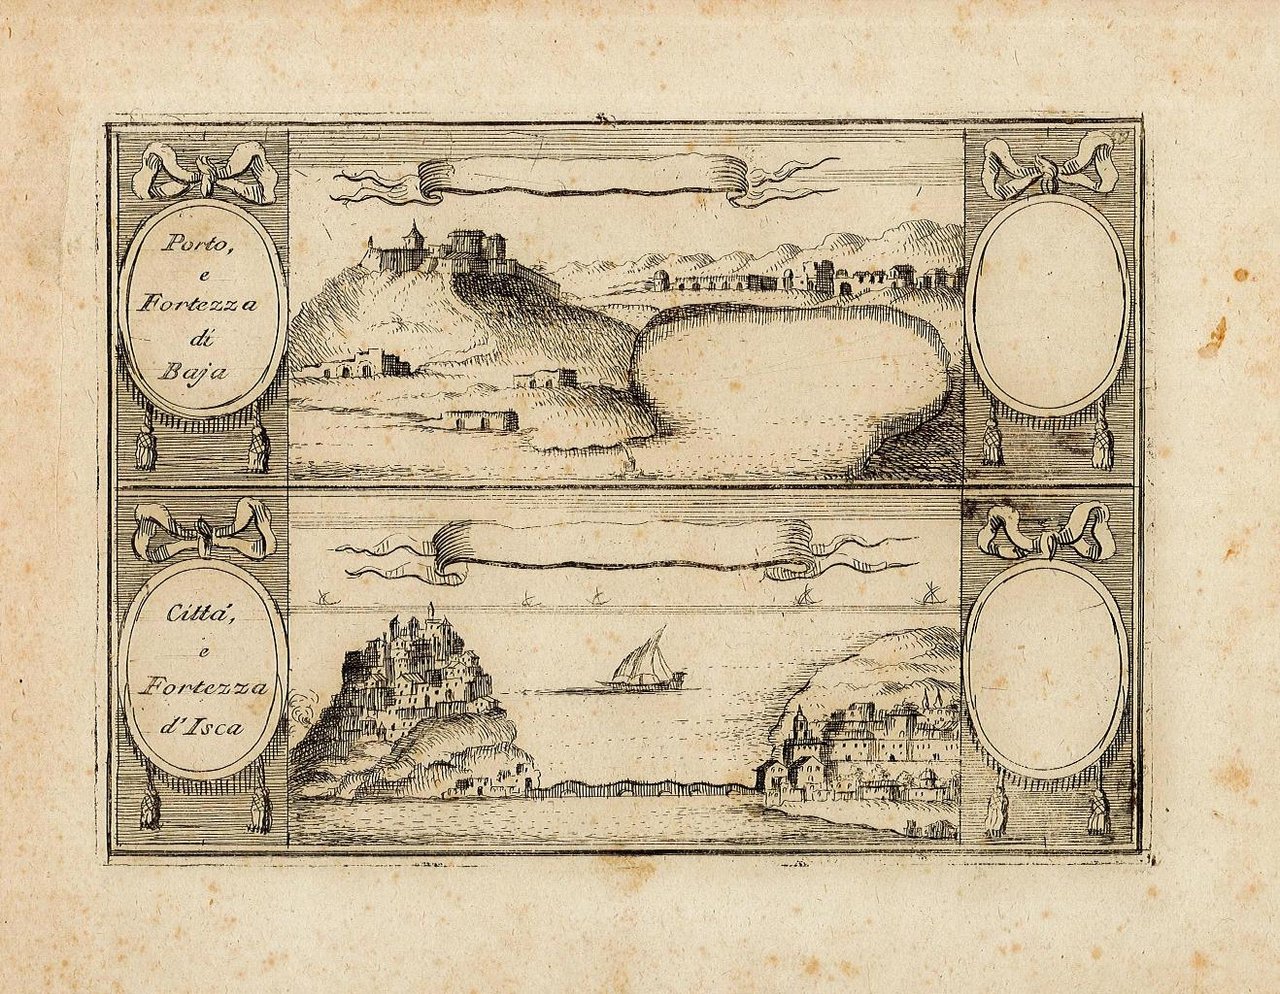 Porto e Fortezza di Baja - Città, e Fortezza d'Ischia